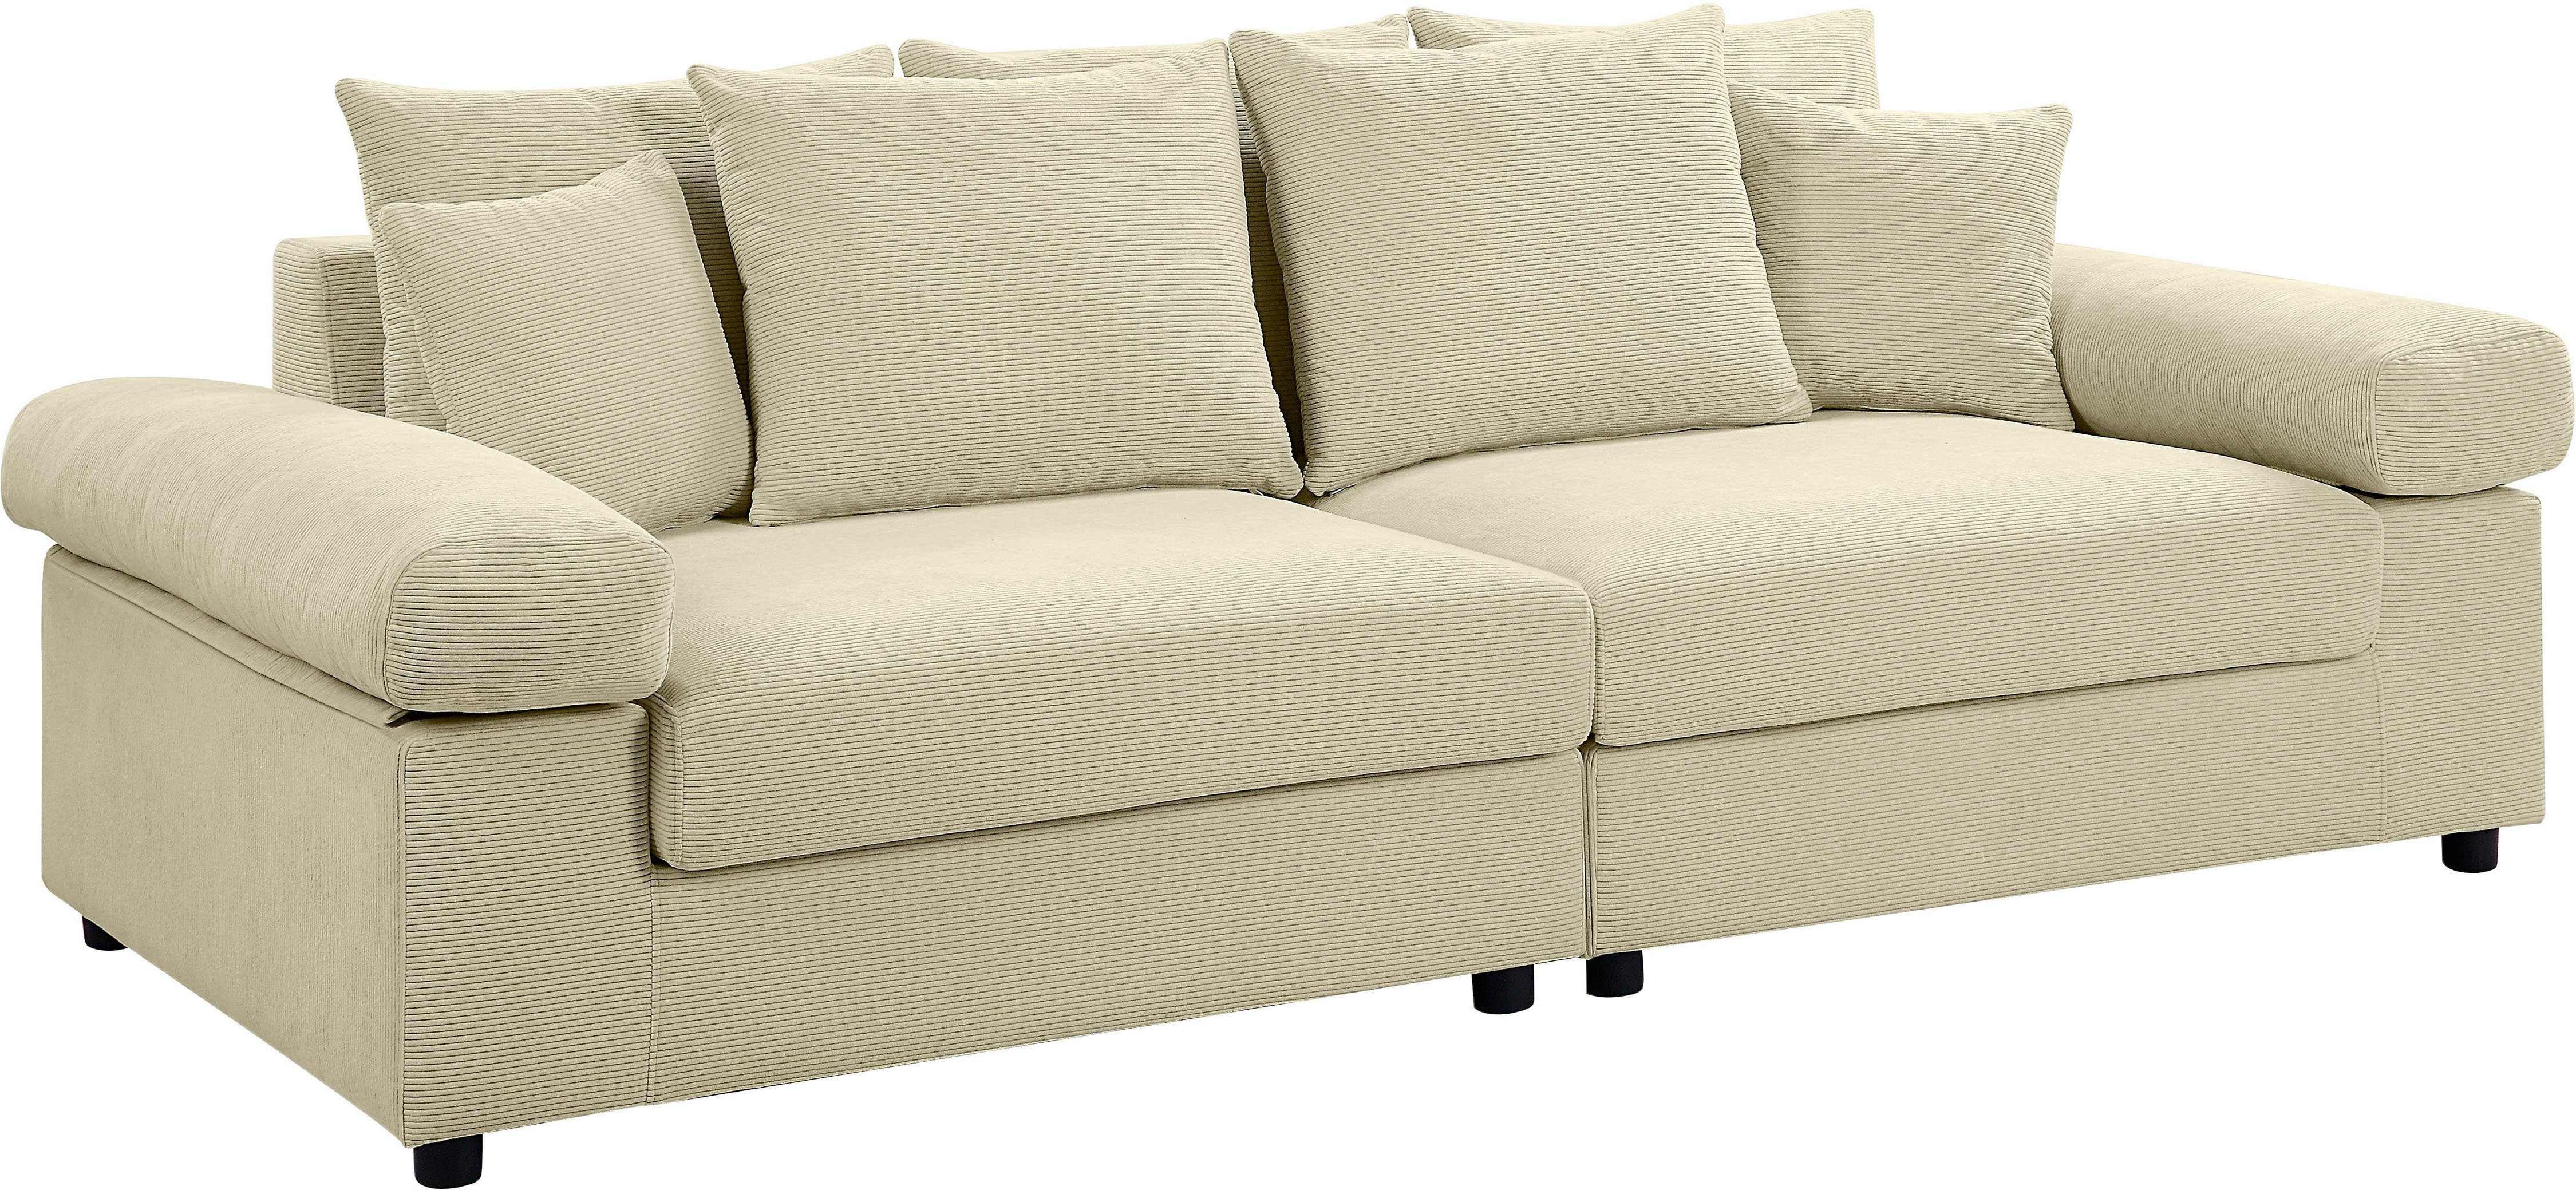 XXL-Sitzfläche, mit stellbar ATLANTIC mit Raum creme Federkern, Bjoern, collection home frei im Big-Sofa Cord-Bezug,